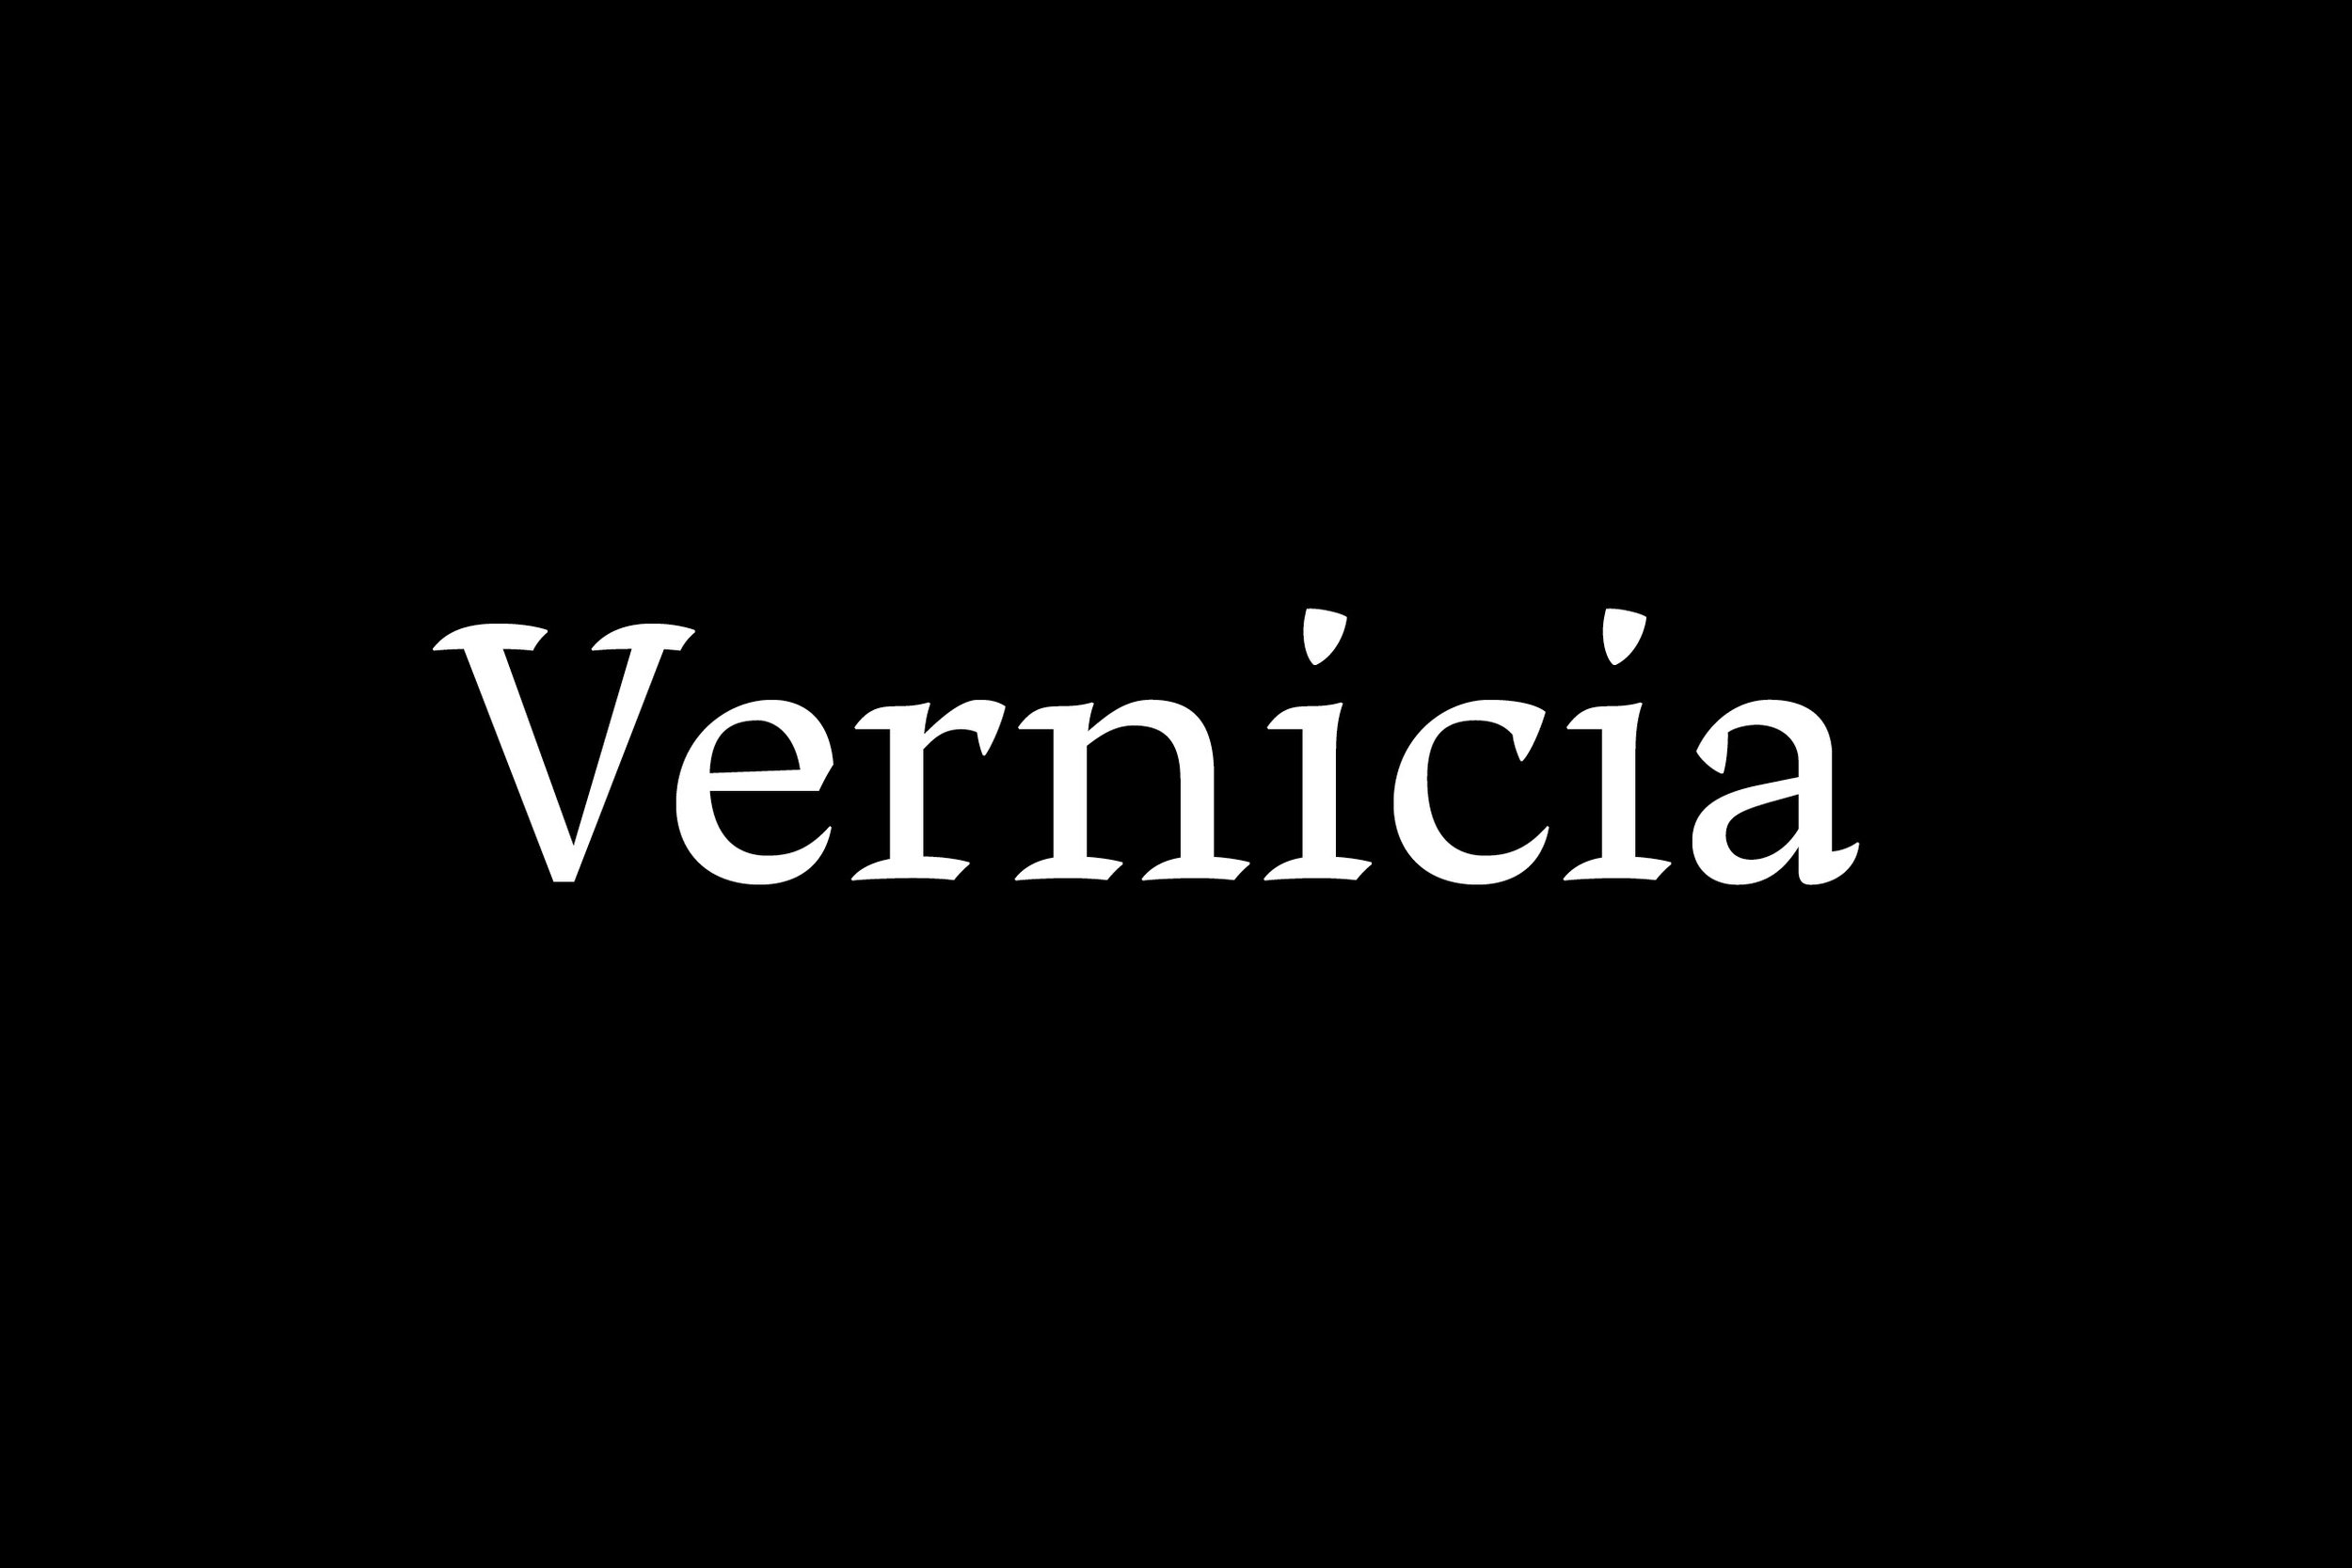 Web_Vernicia_1920x1280px1.jpg